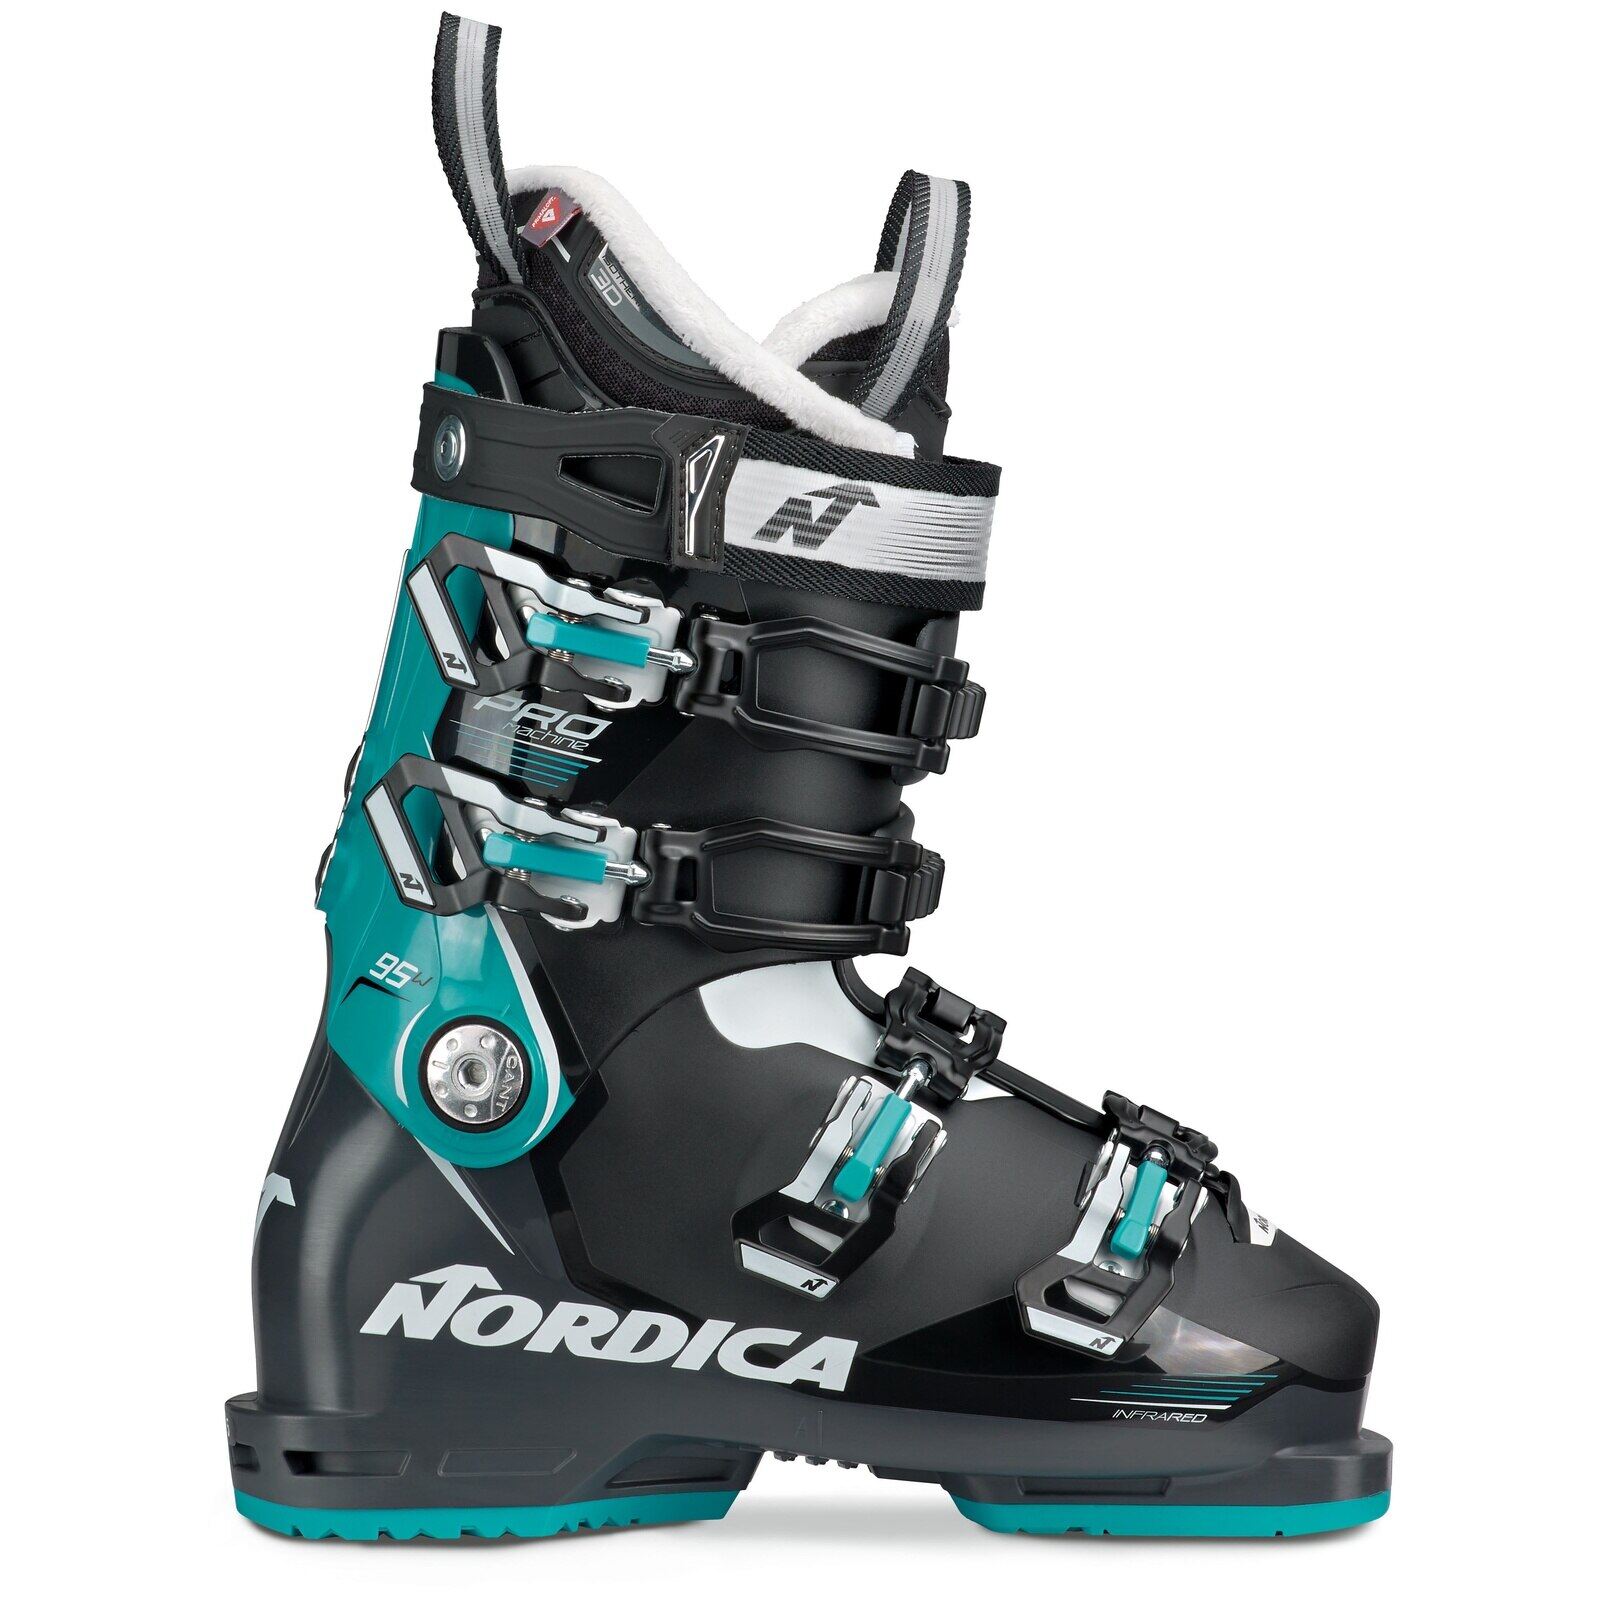 Nordica One 40 W Ski Skiing Boots Gray Mondo 23.5 Womens 6.5